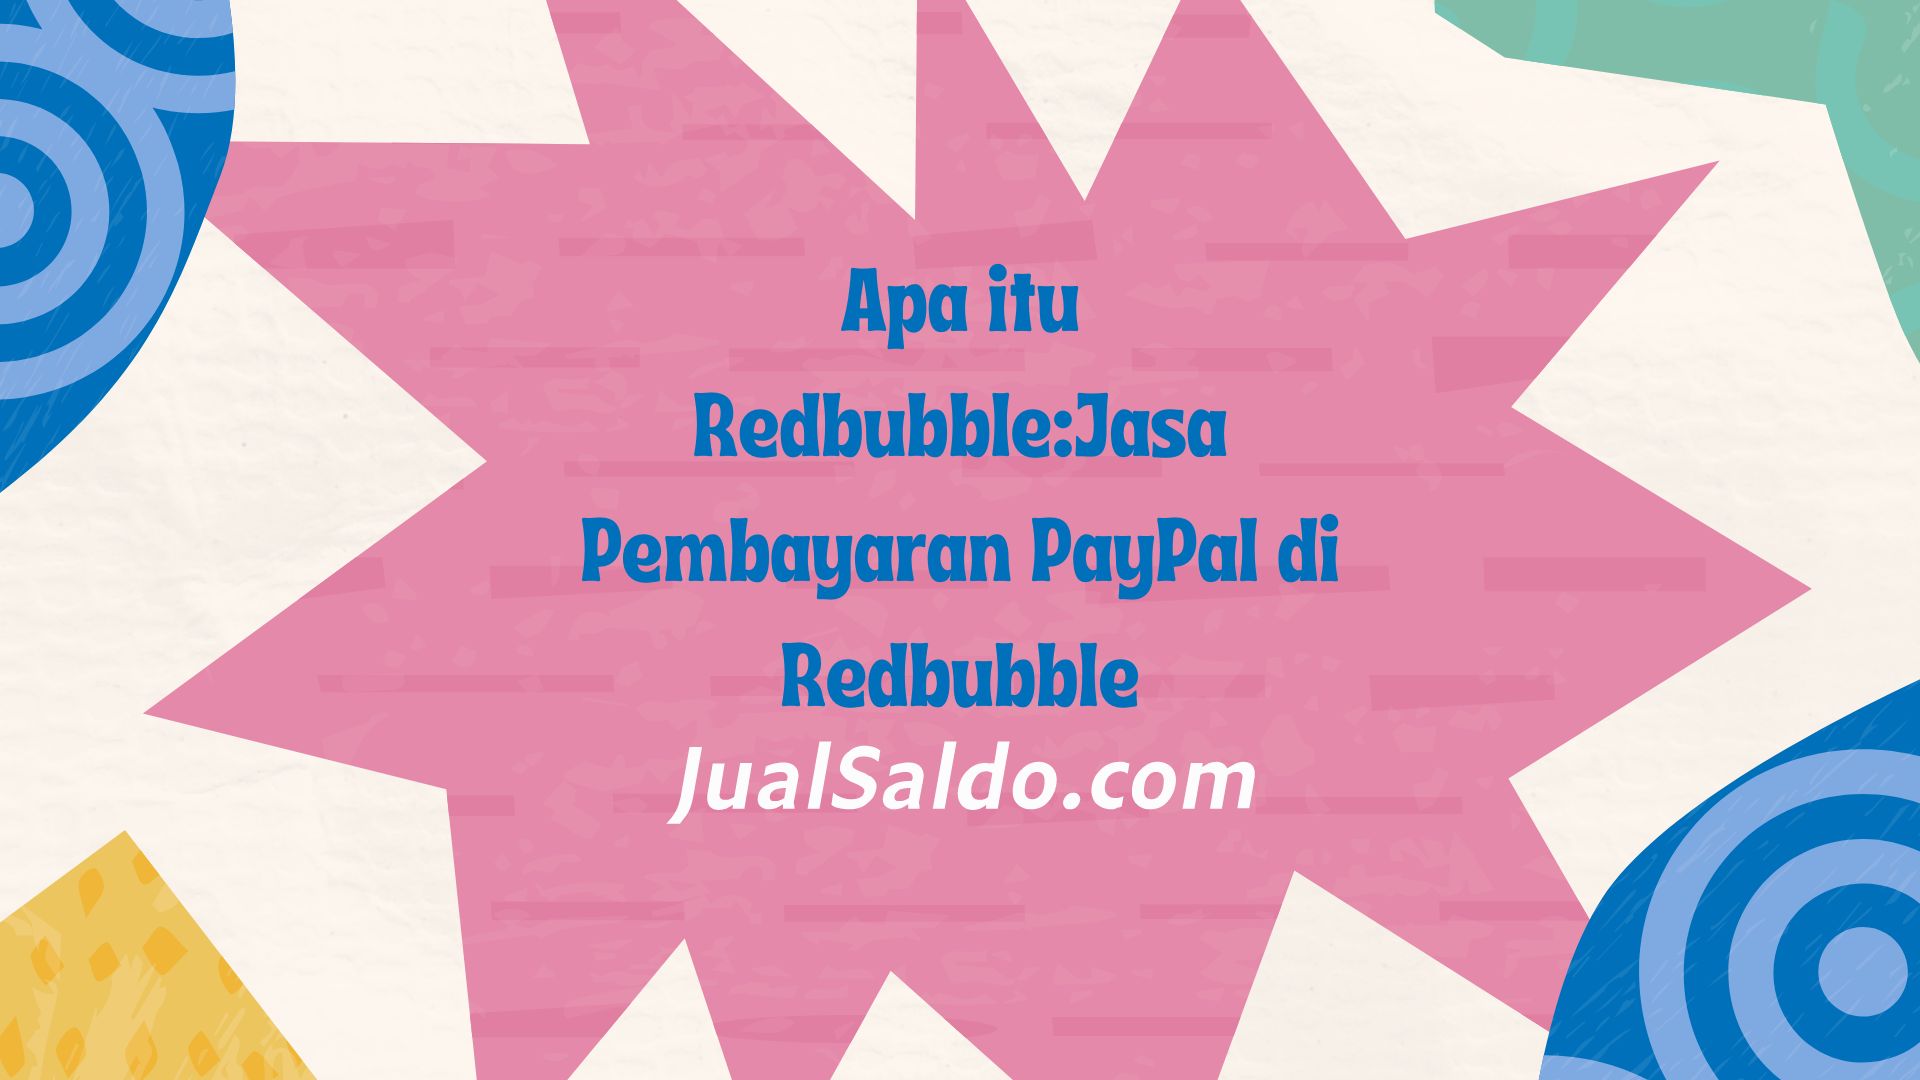 Apa itu Redbubble:Jasa Pembayaran PayPal di Redbubble